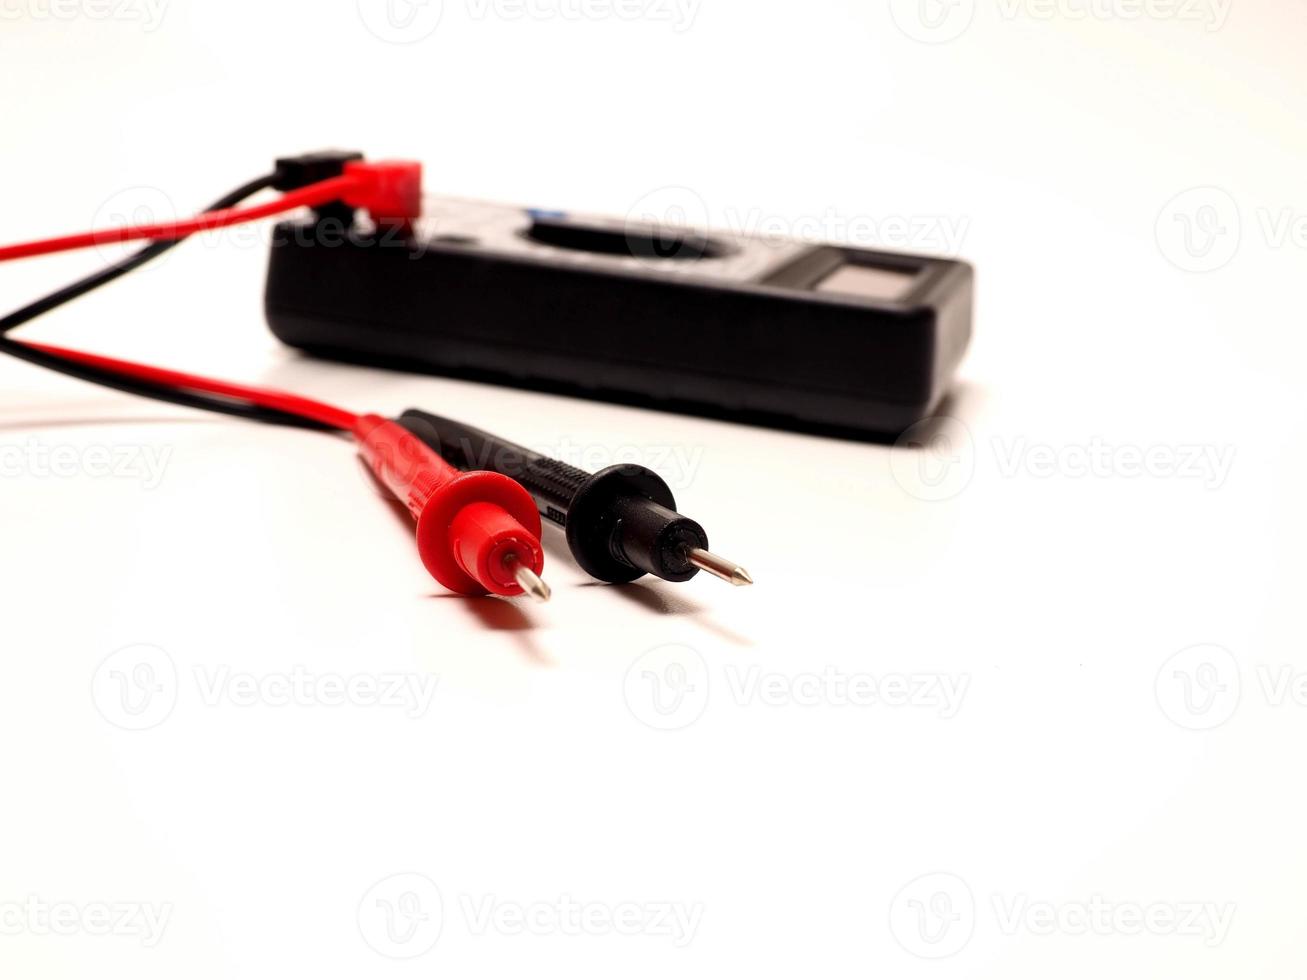 Bild eines schwarzen Digitalmultimeters oder Avo-Meters zum Messen elektrischer Dinge wie Spannung, Widerstand und Strom foto